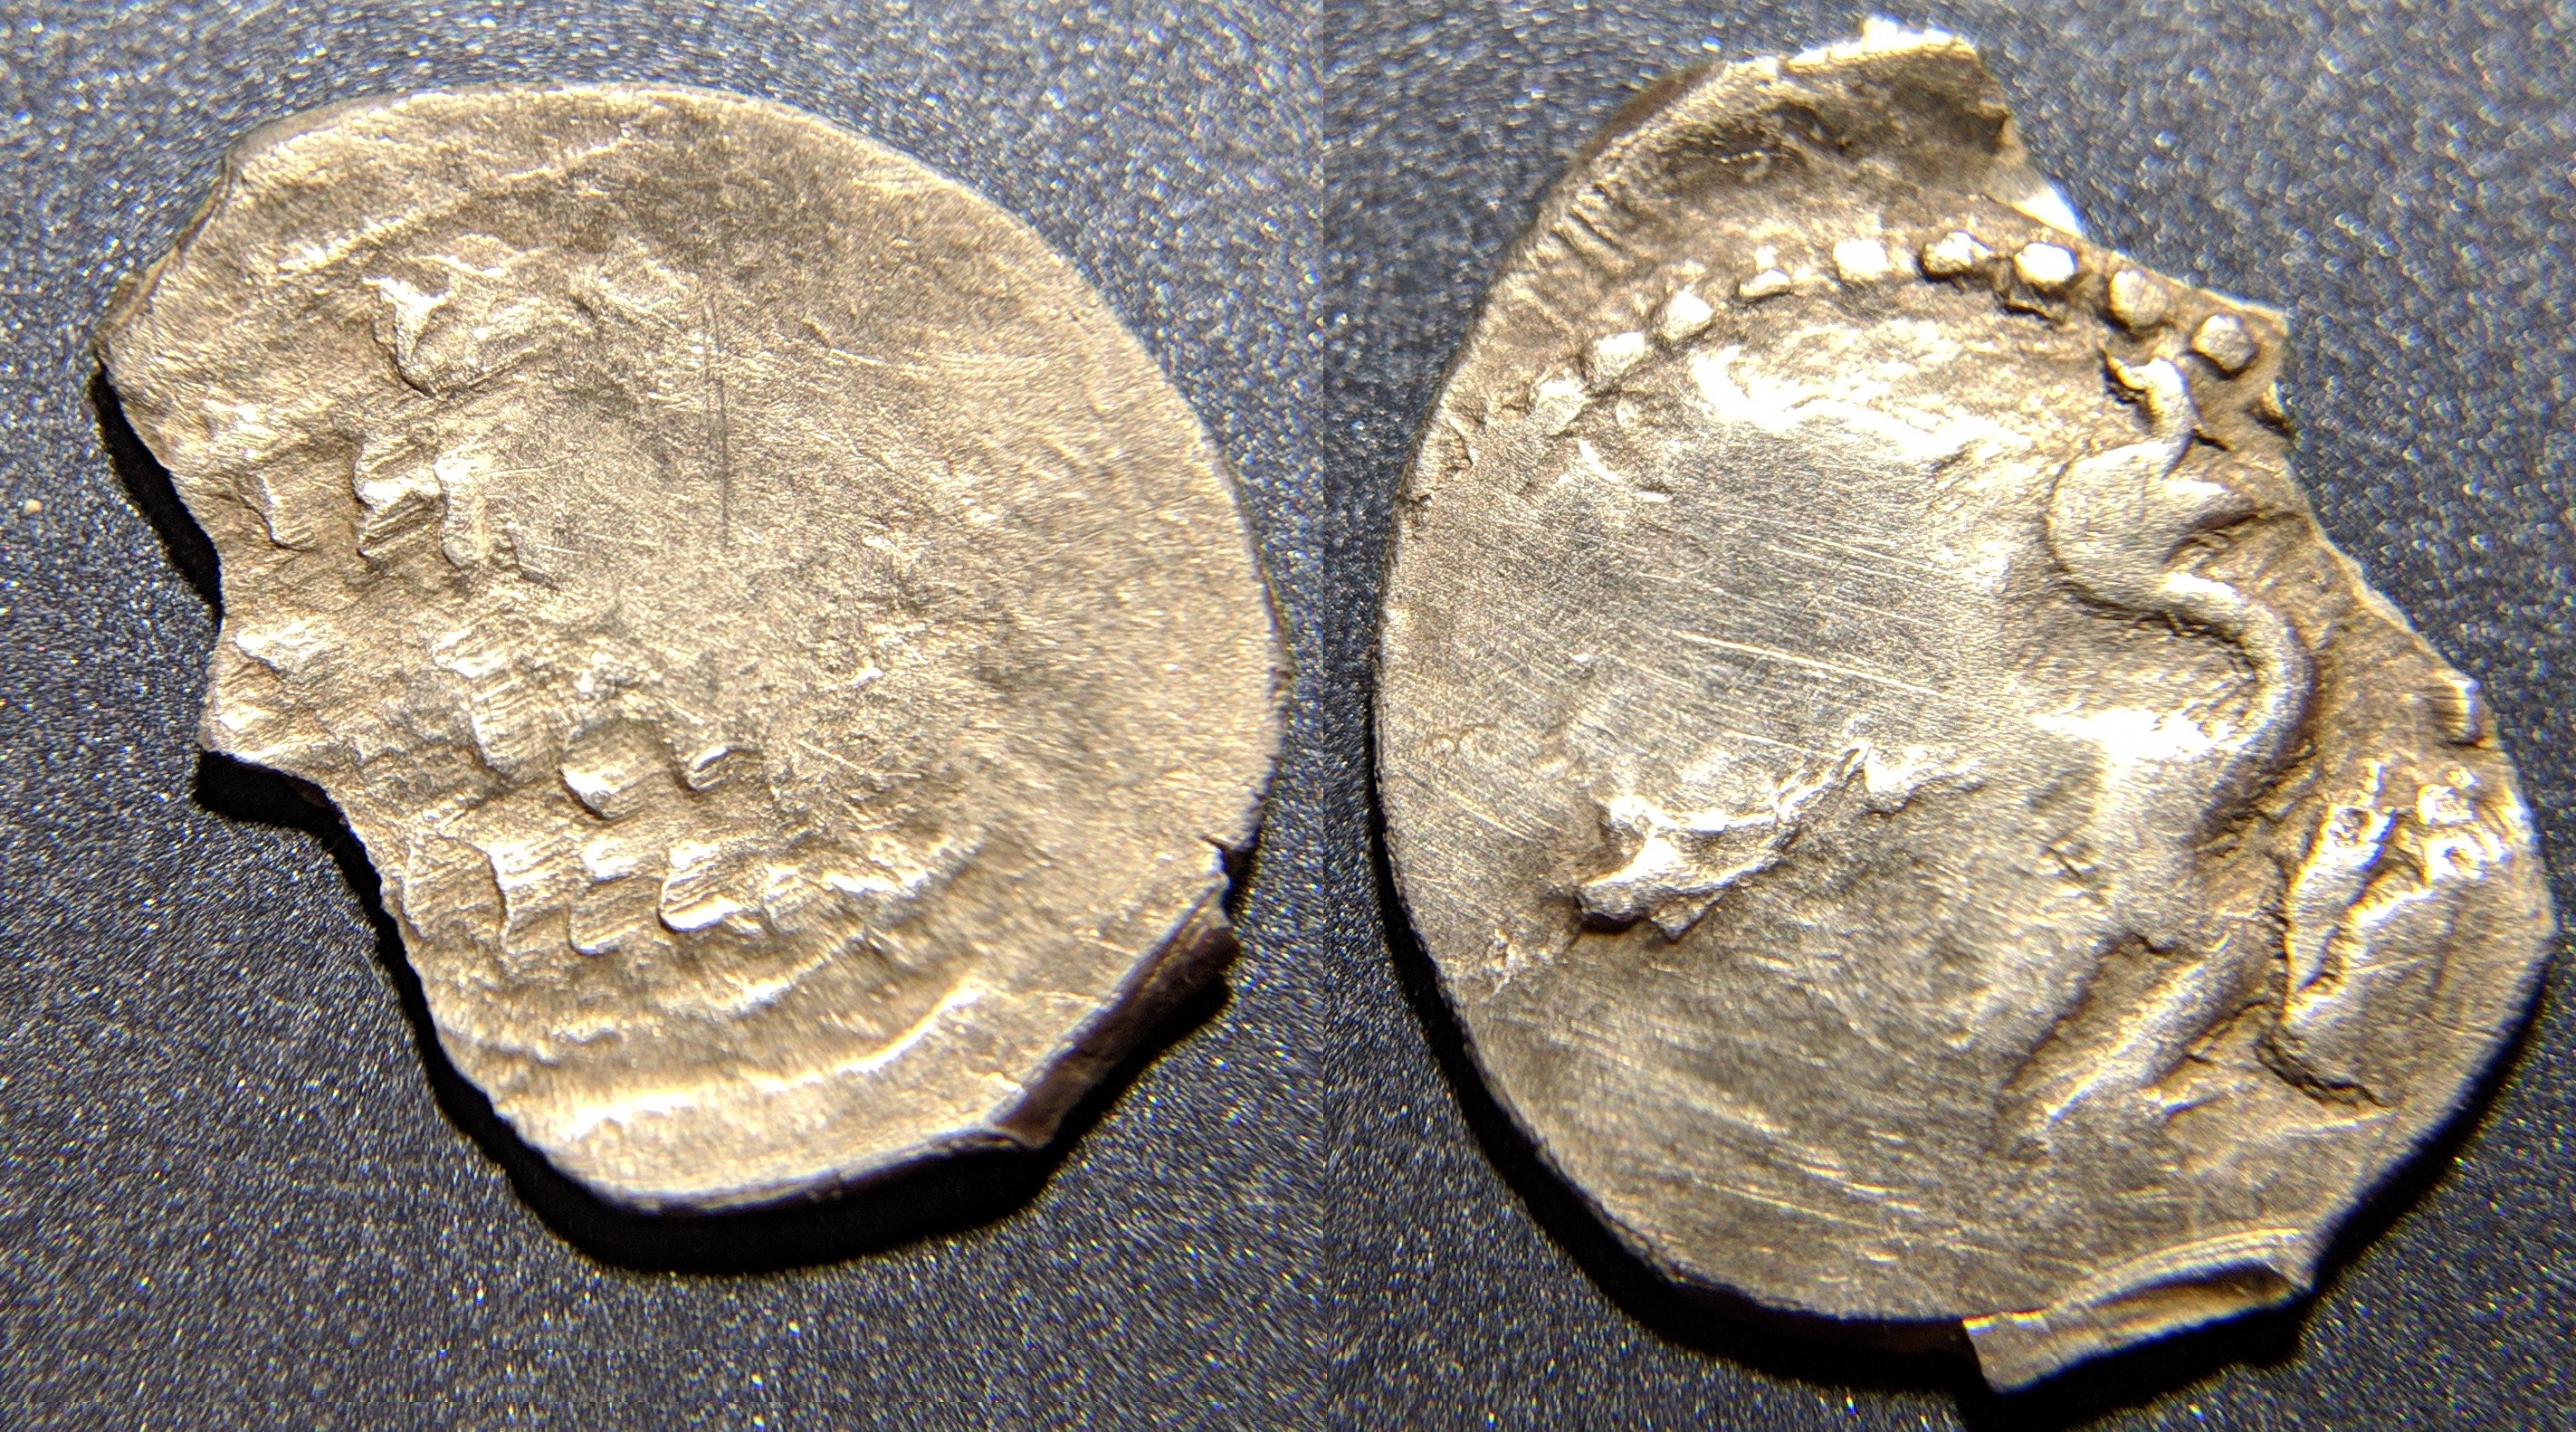 coin 1